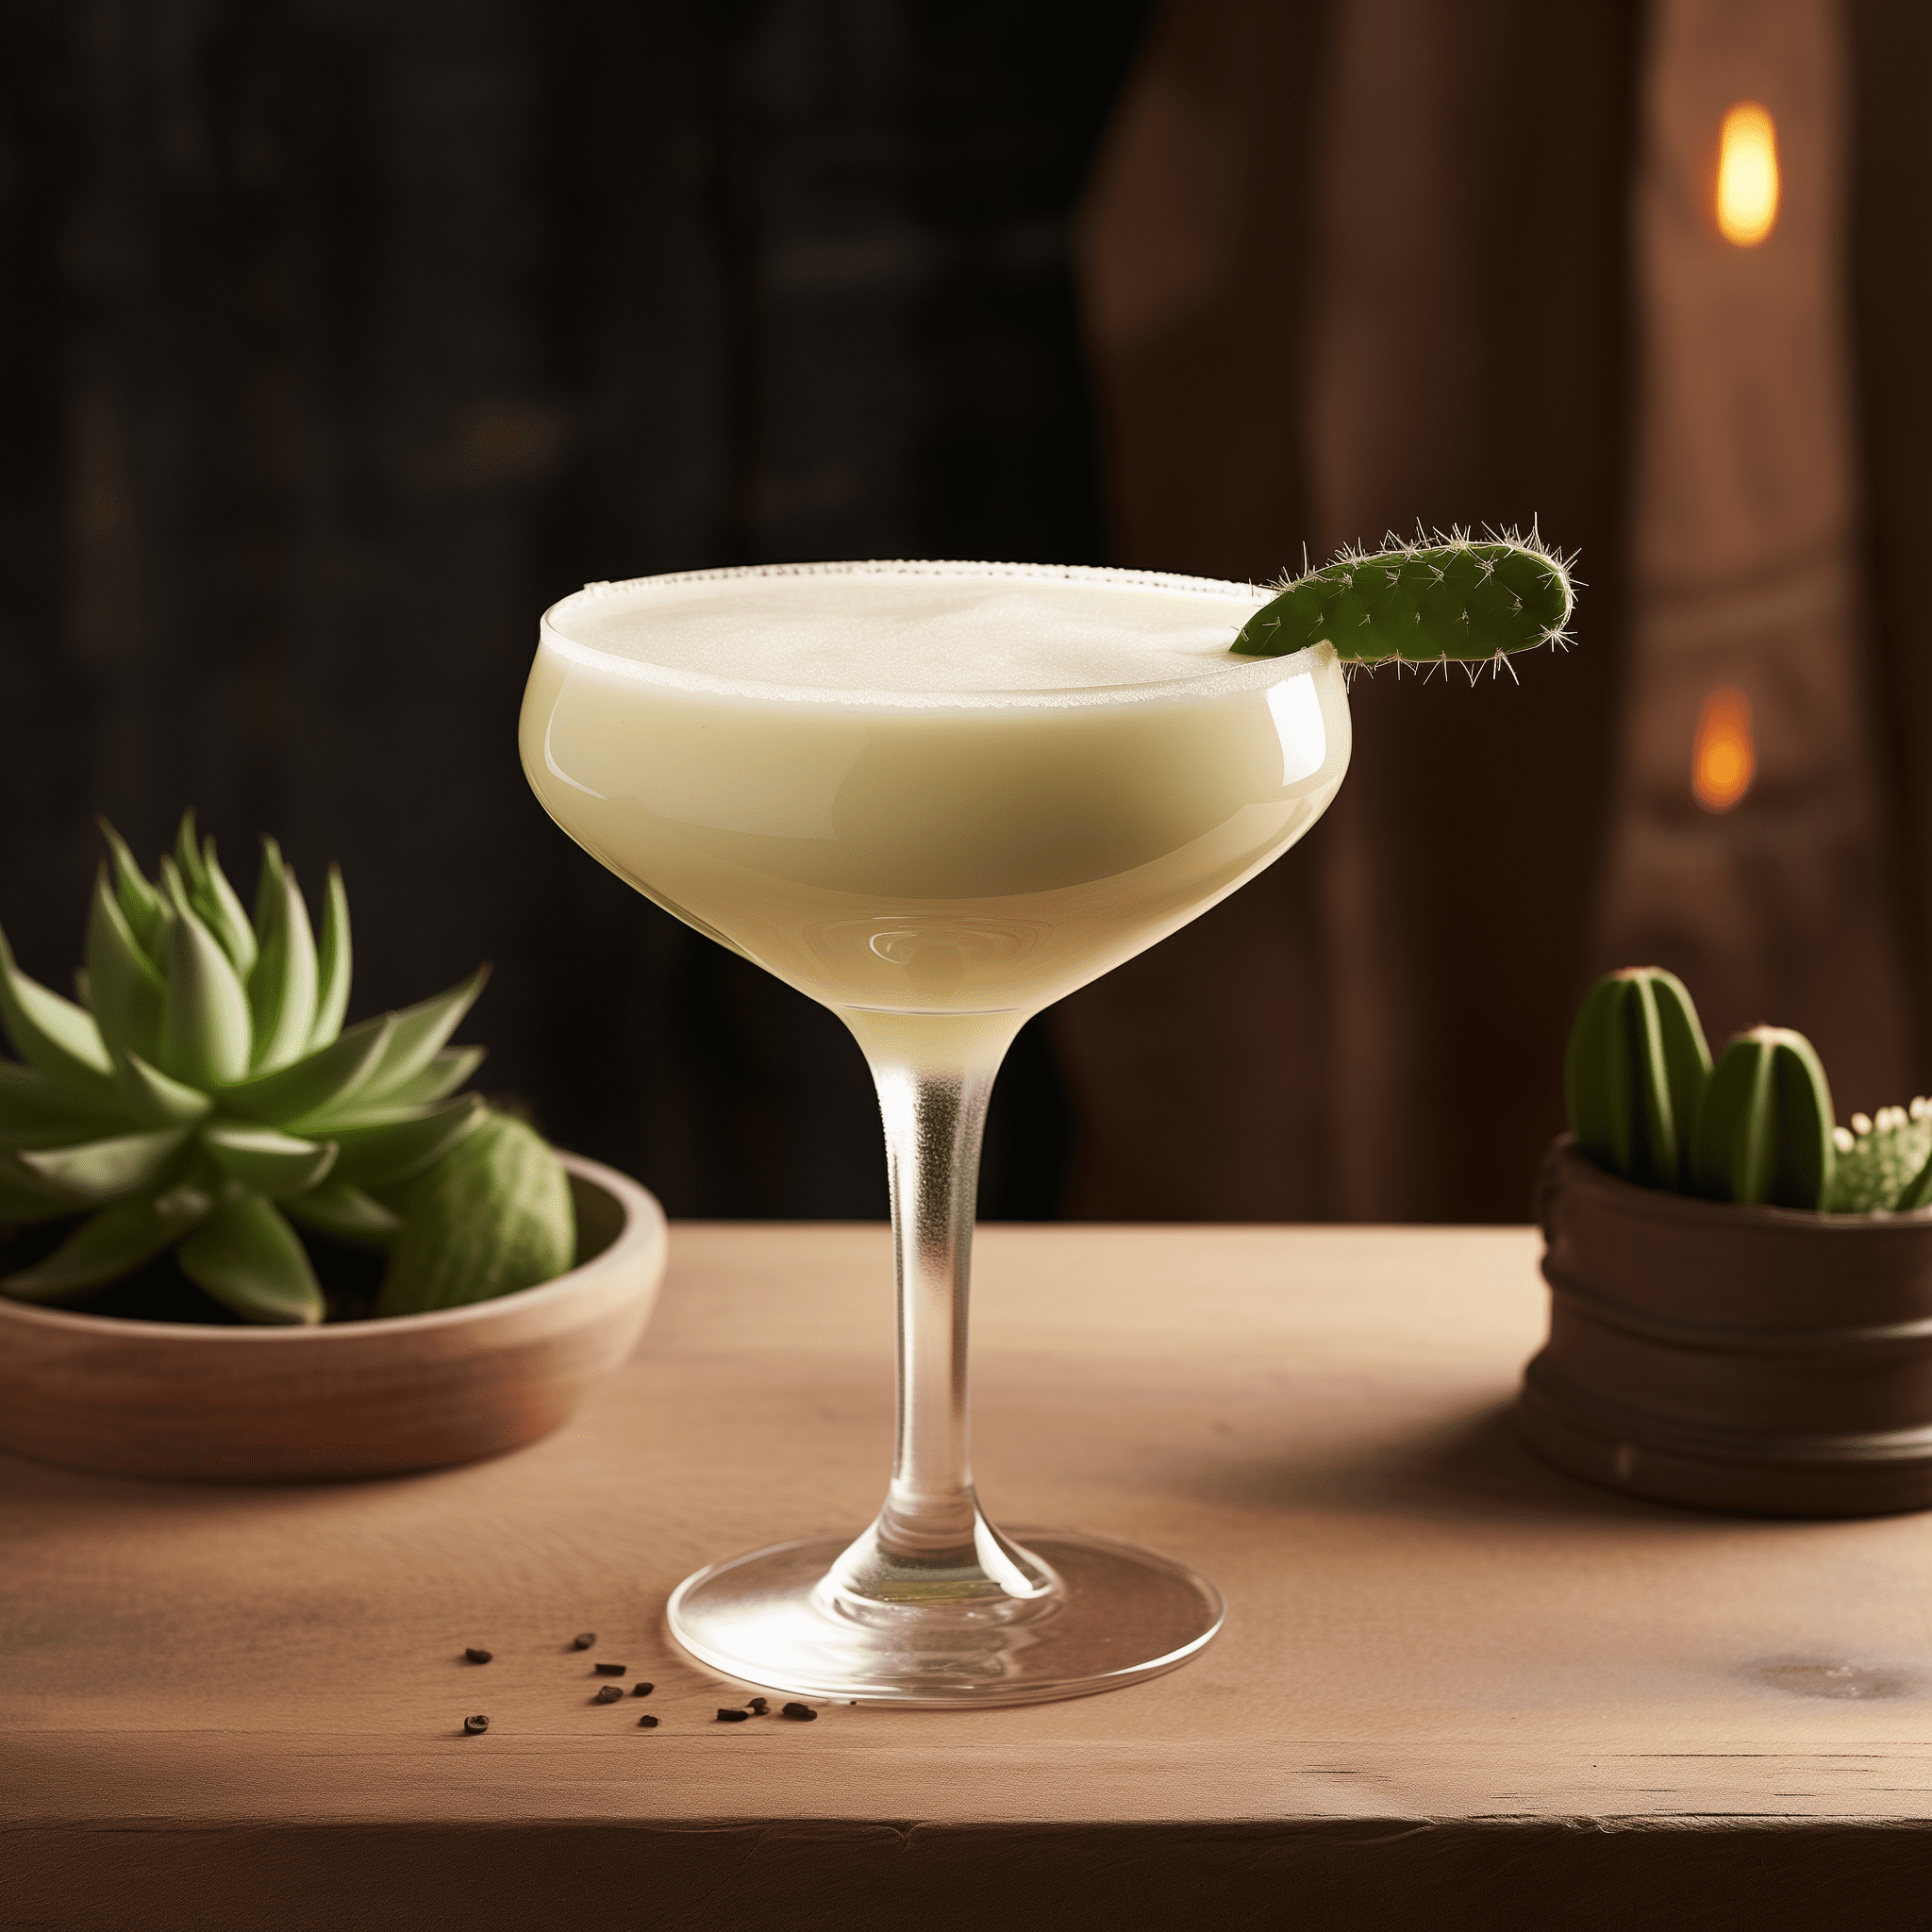 Irish Cactus Cóctel Receta - El Irish Cactus ofrece una dulzura rica y cremosa con una corriente subyacente de agave del tequila. Es una mezcla armoniosa de suave y ardiente, con una textura aterciopelada que cubre el paladar.